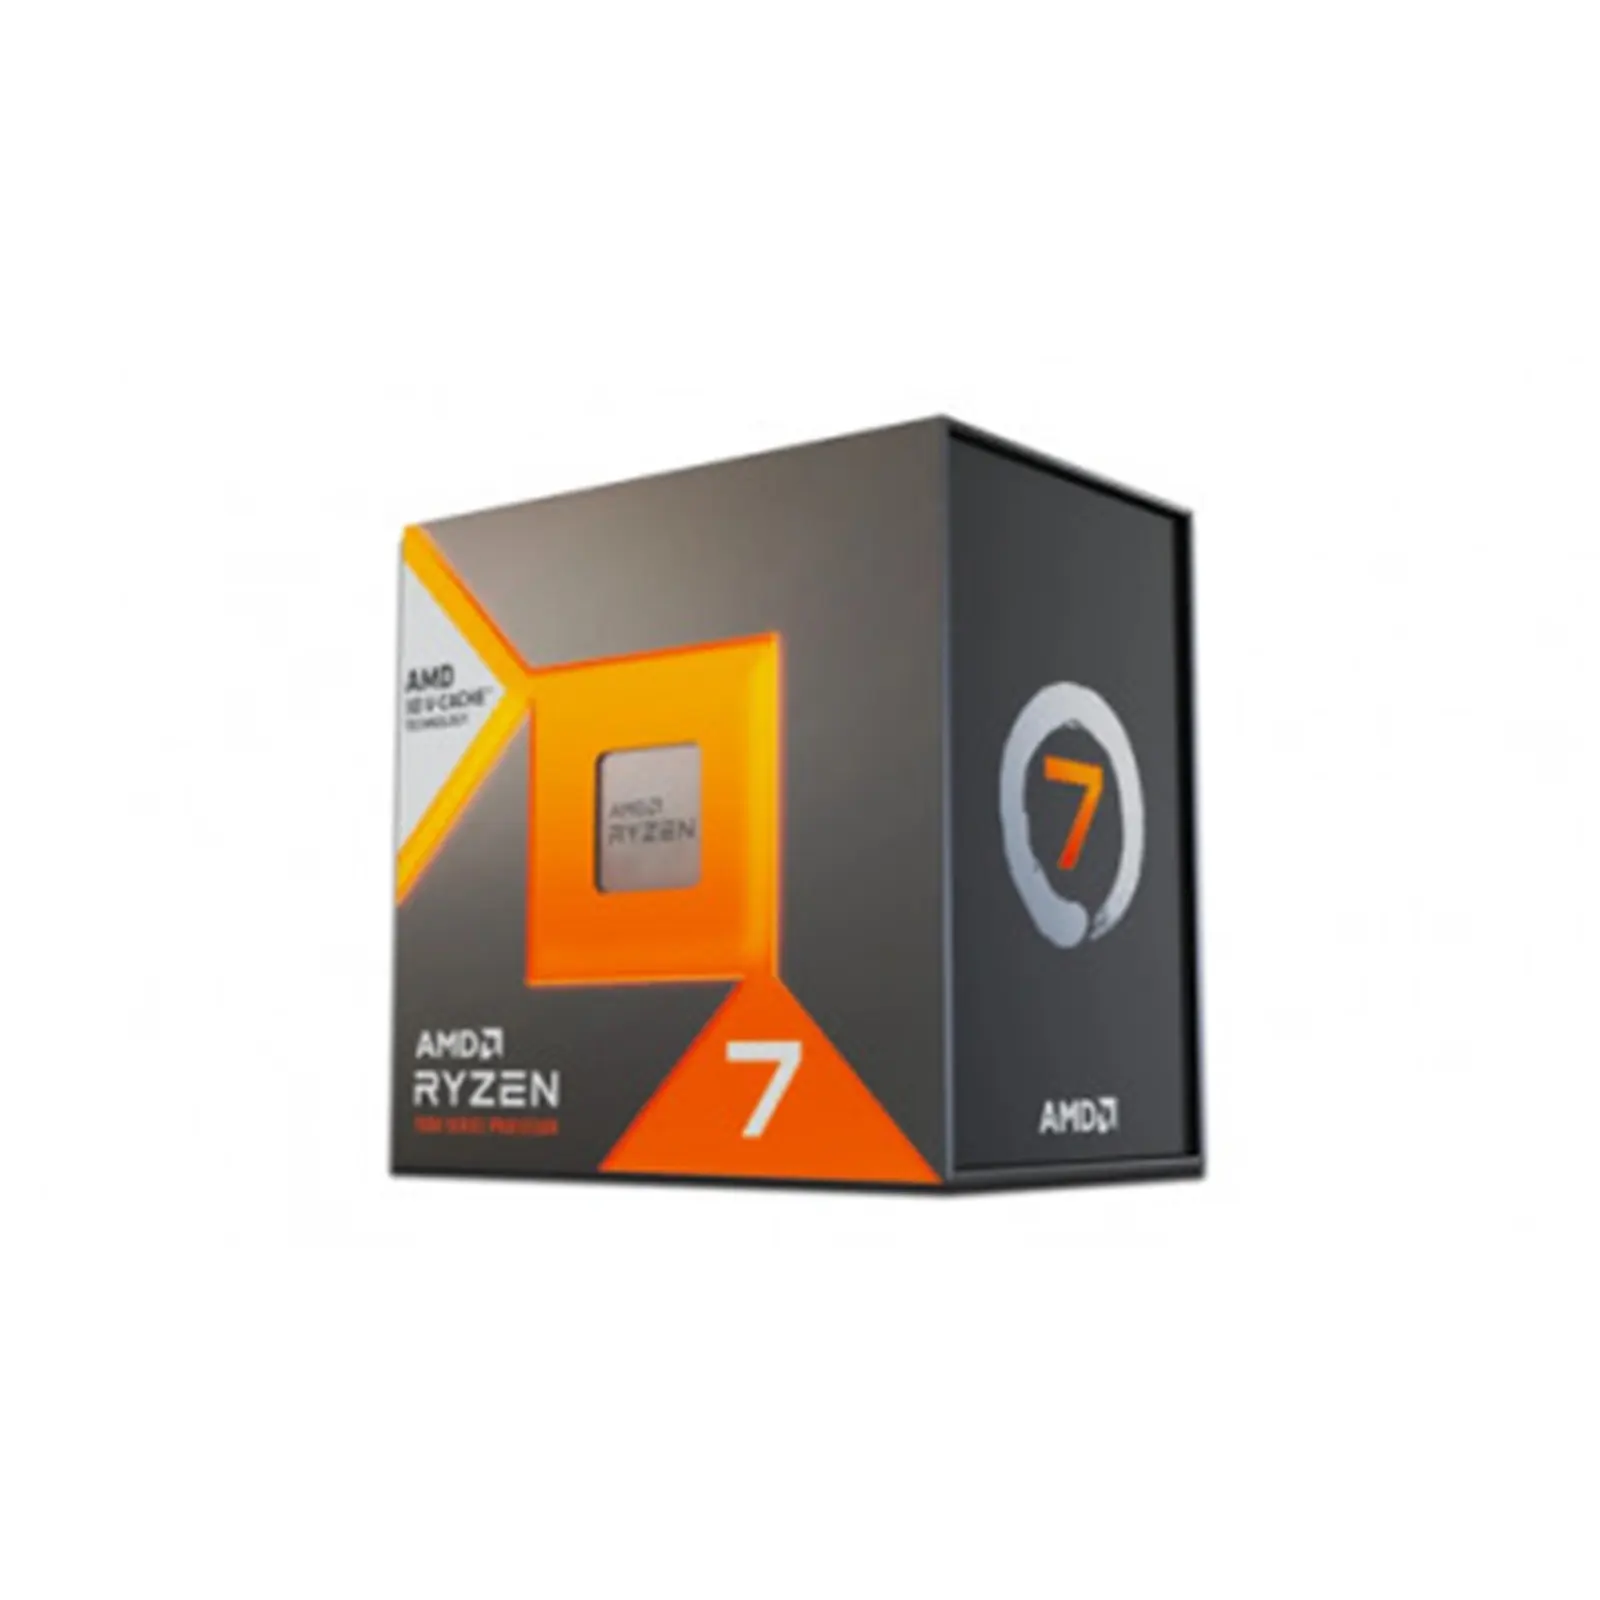 AMD Ryzen 7 7800X3D 4.2GHz AM5 Processor, 16 Threads, 5.0GHz